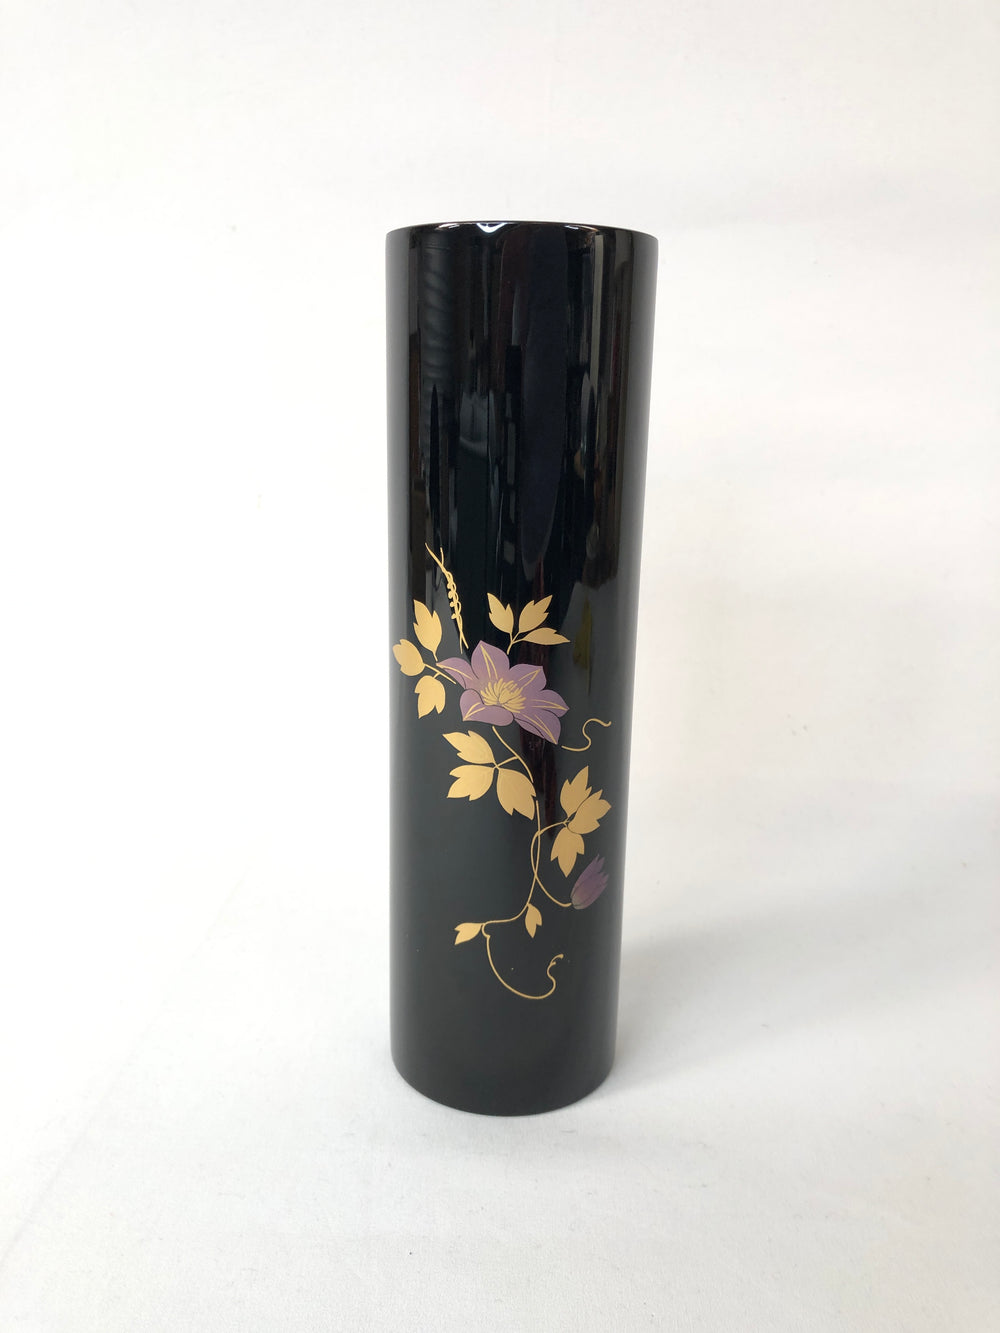 Vintage Japanese Ikebana Vase